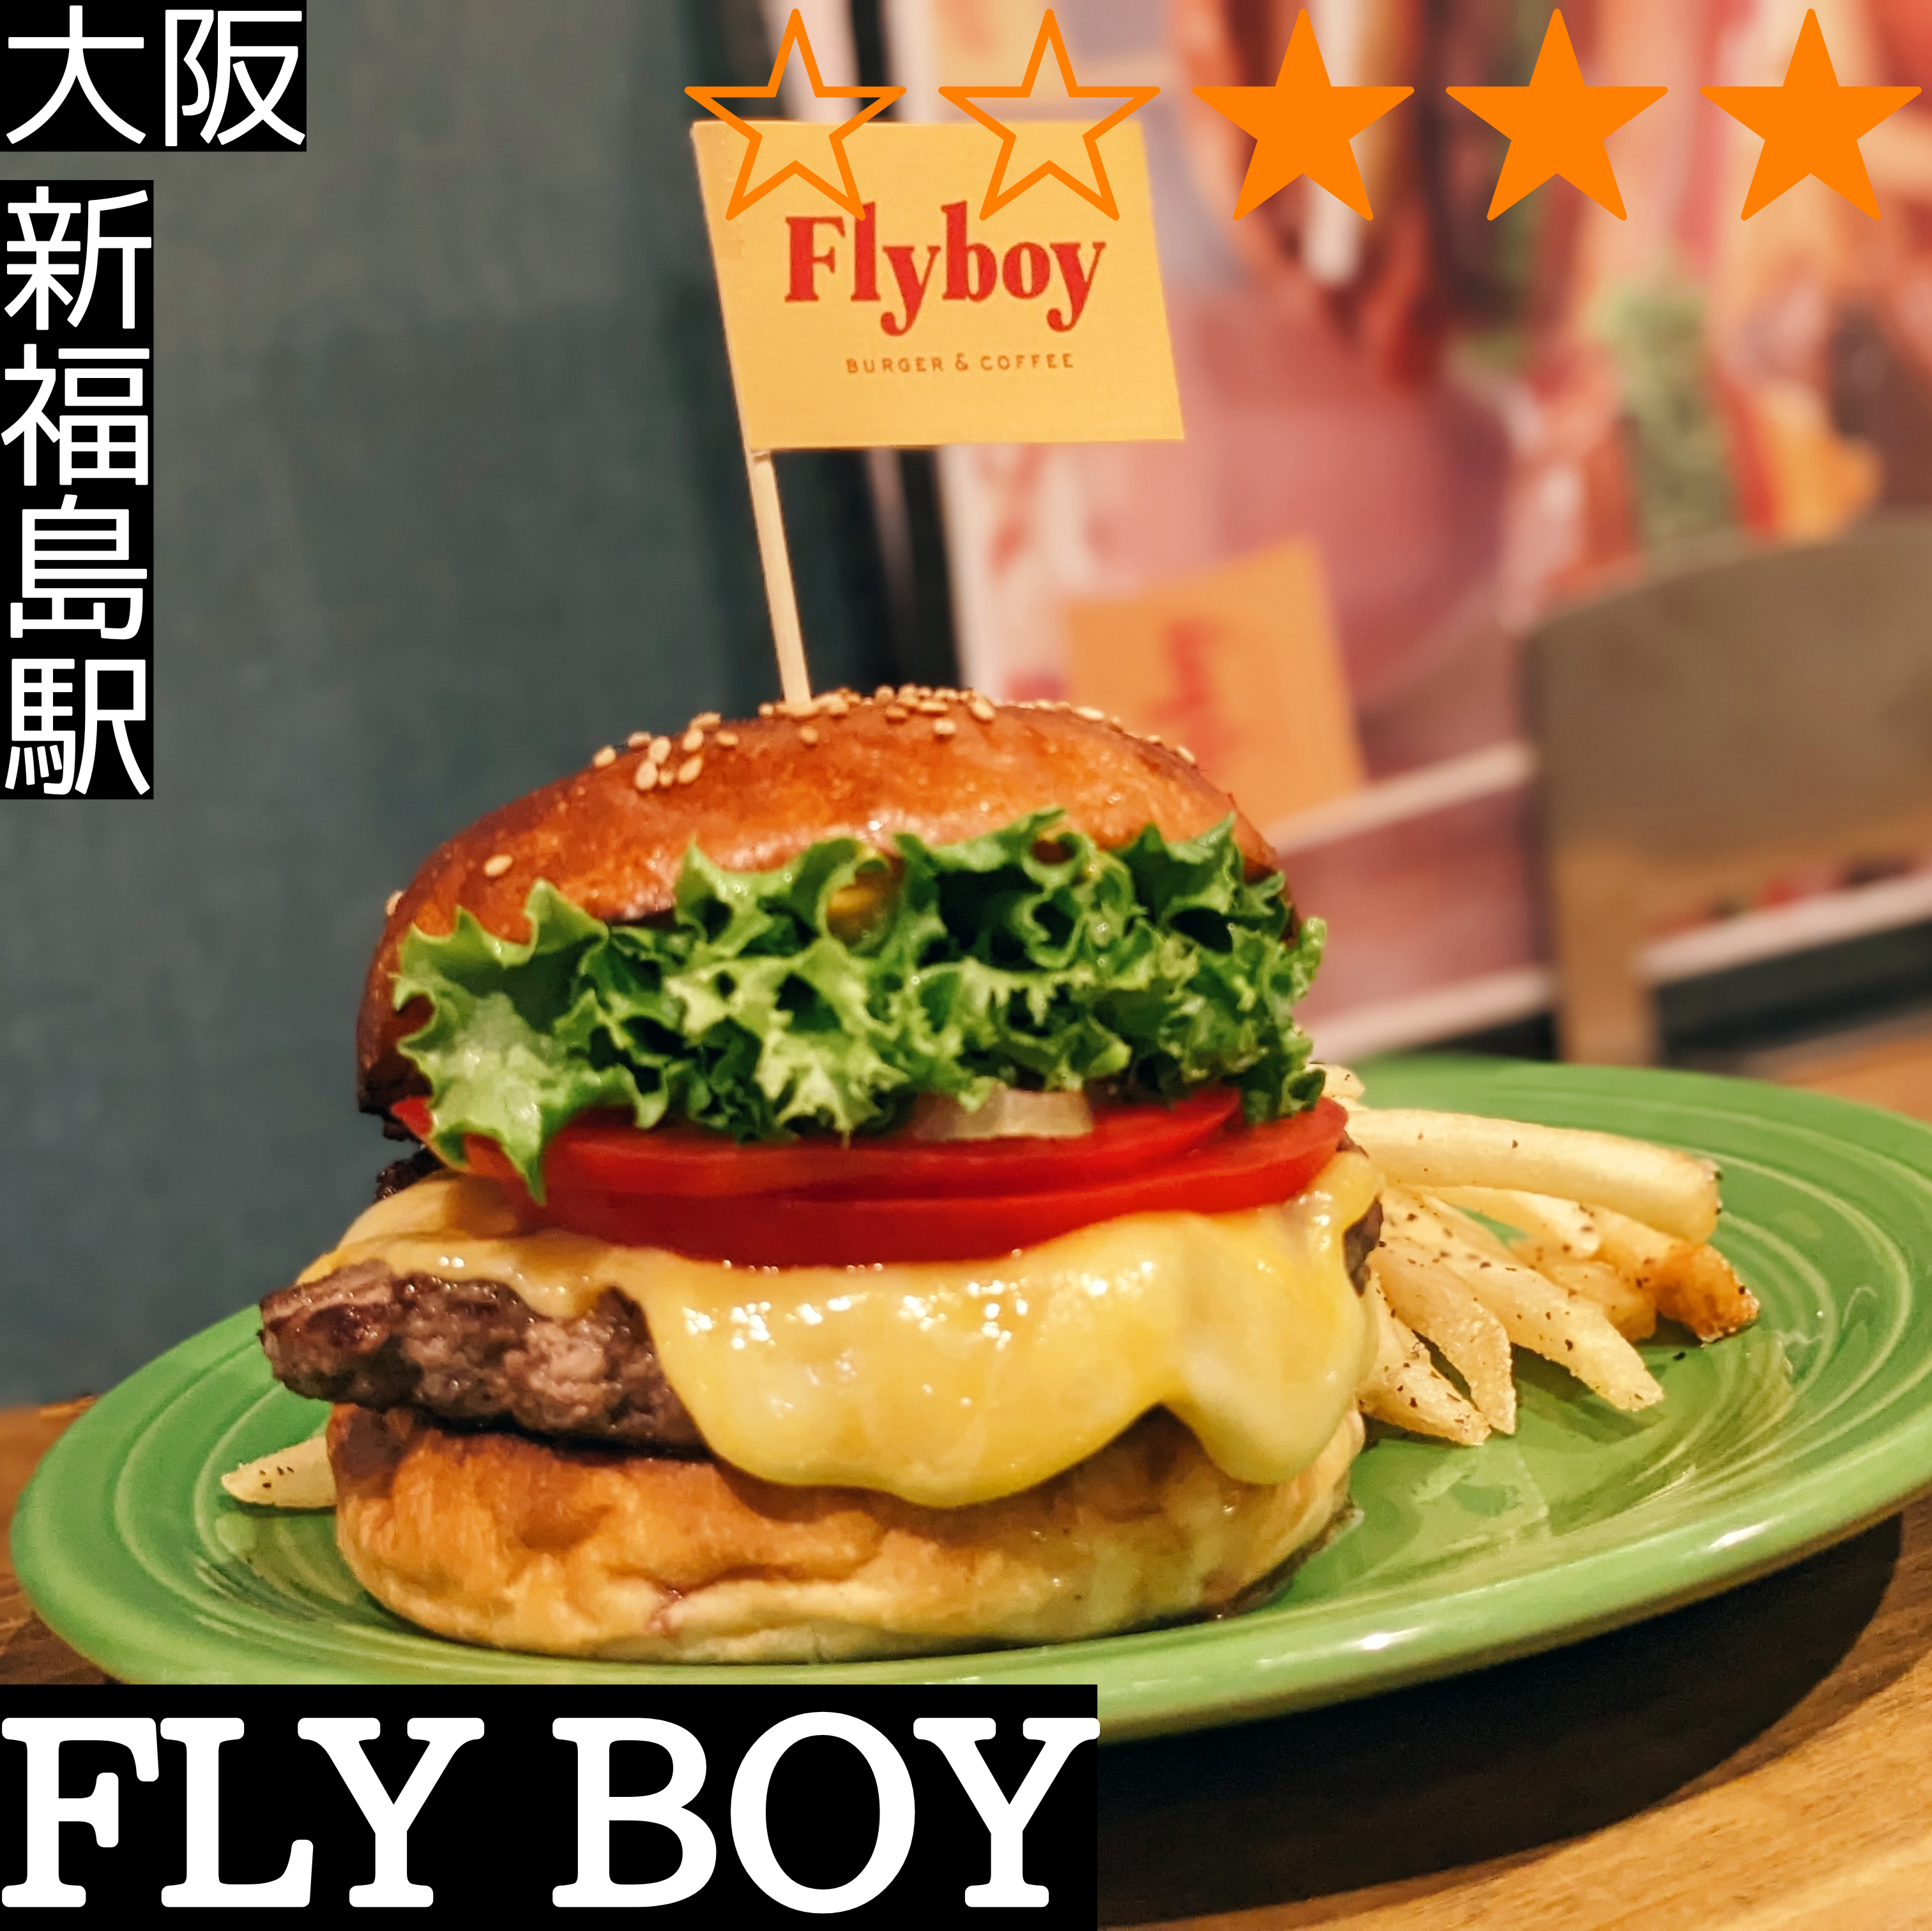 FLY BOY バーガー&コーヒー(新福島駅・ハンバーガー,カフェ)